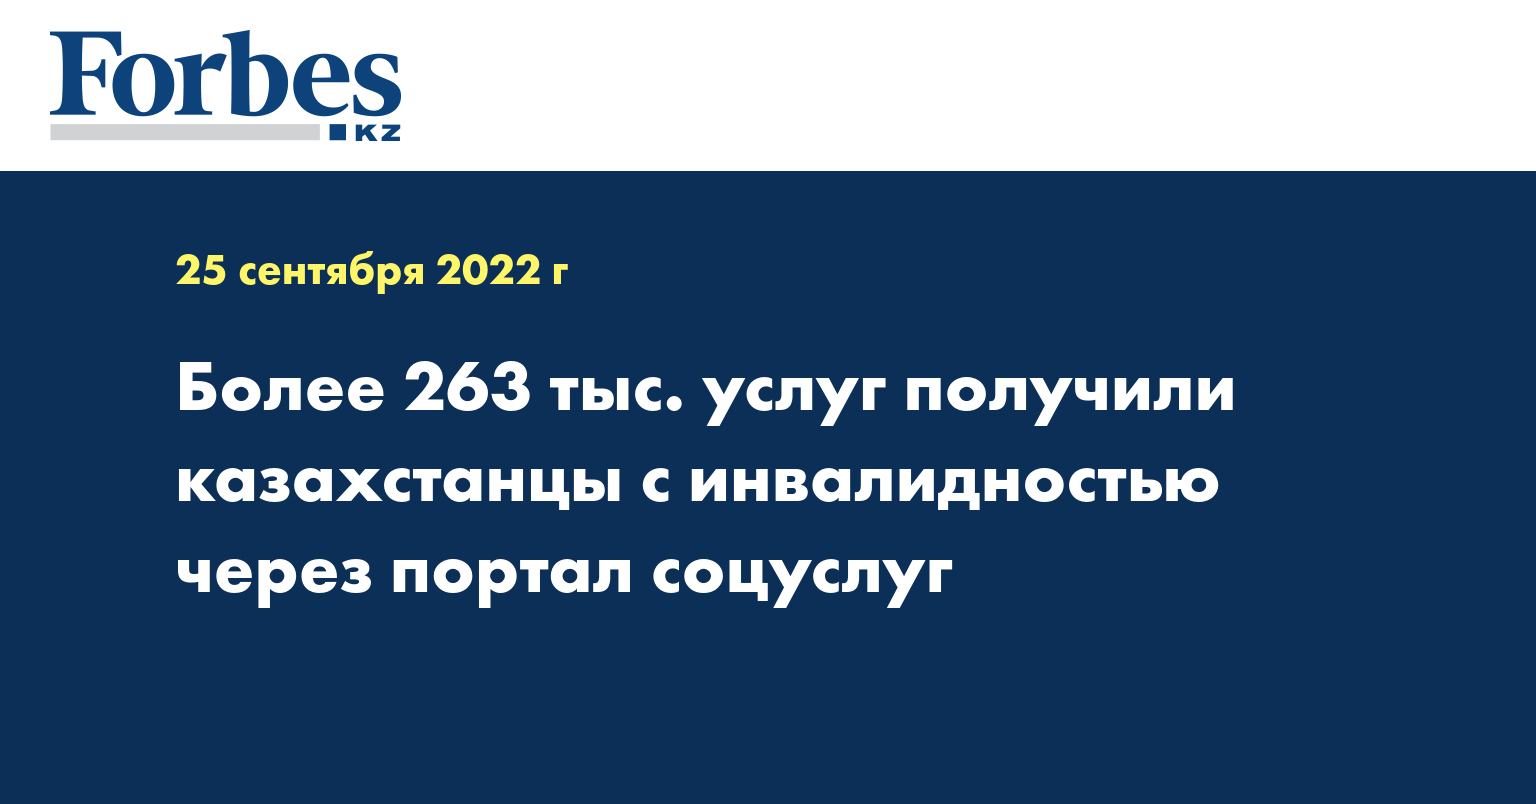 Более 263 тыс. услуг получили казахстанцы с инвалидностью через портал соцуслуг